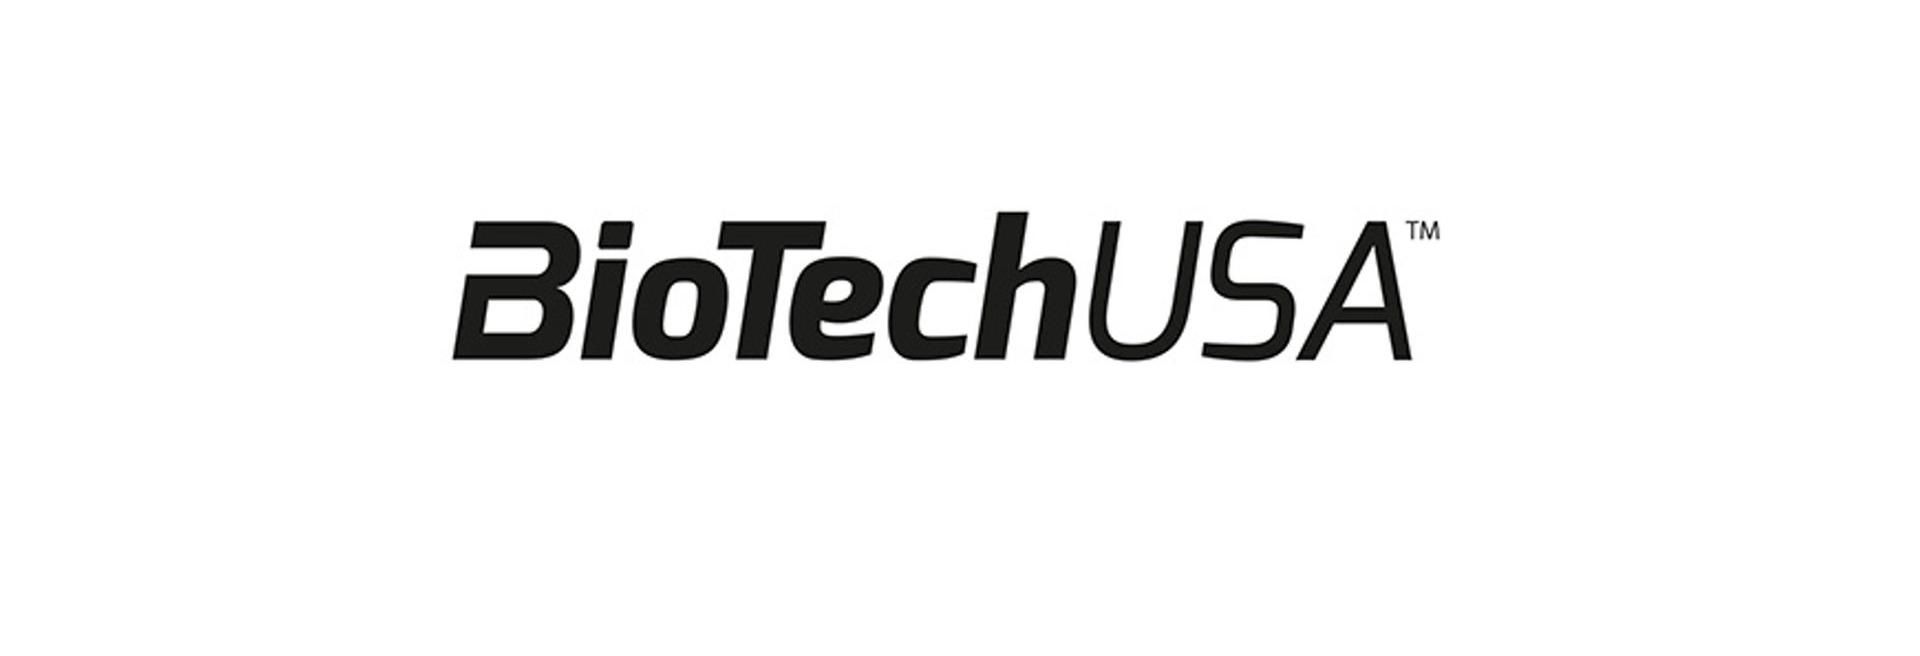 Új üzemmel még több energia szelet készülhet a BioTech USA szadai telephelyén - VIDEÓRIPORT